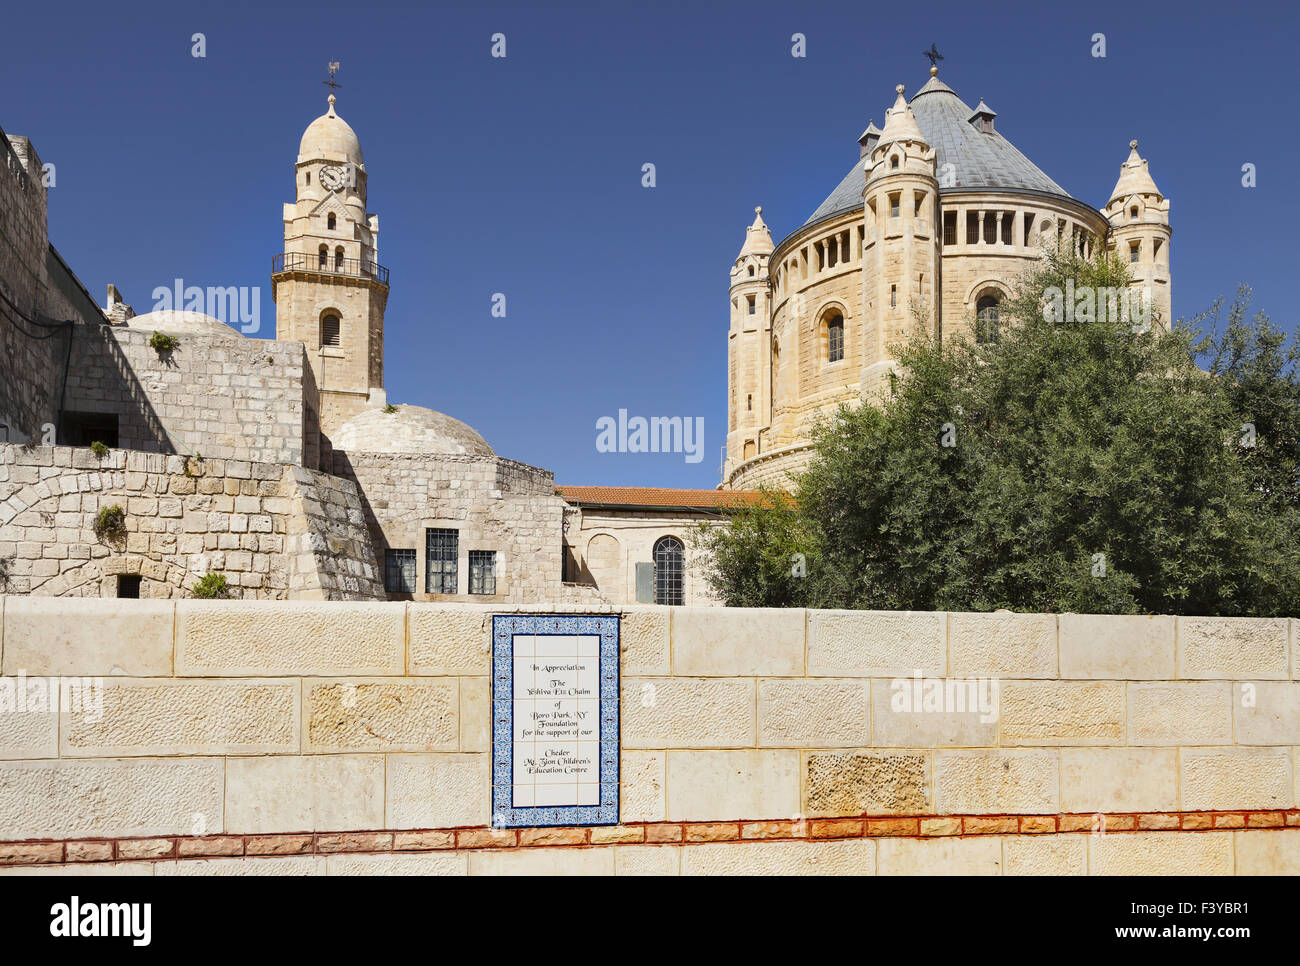 Vieille ville, Jérusalem, Israël Banque D'Images